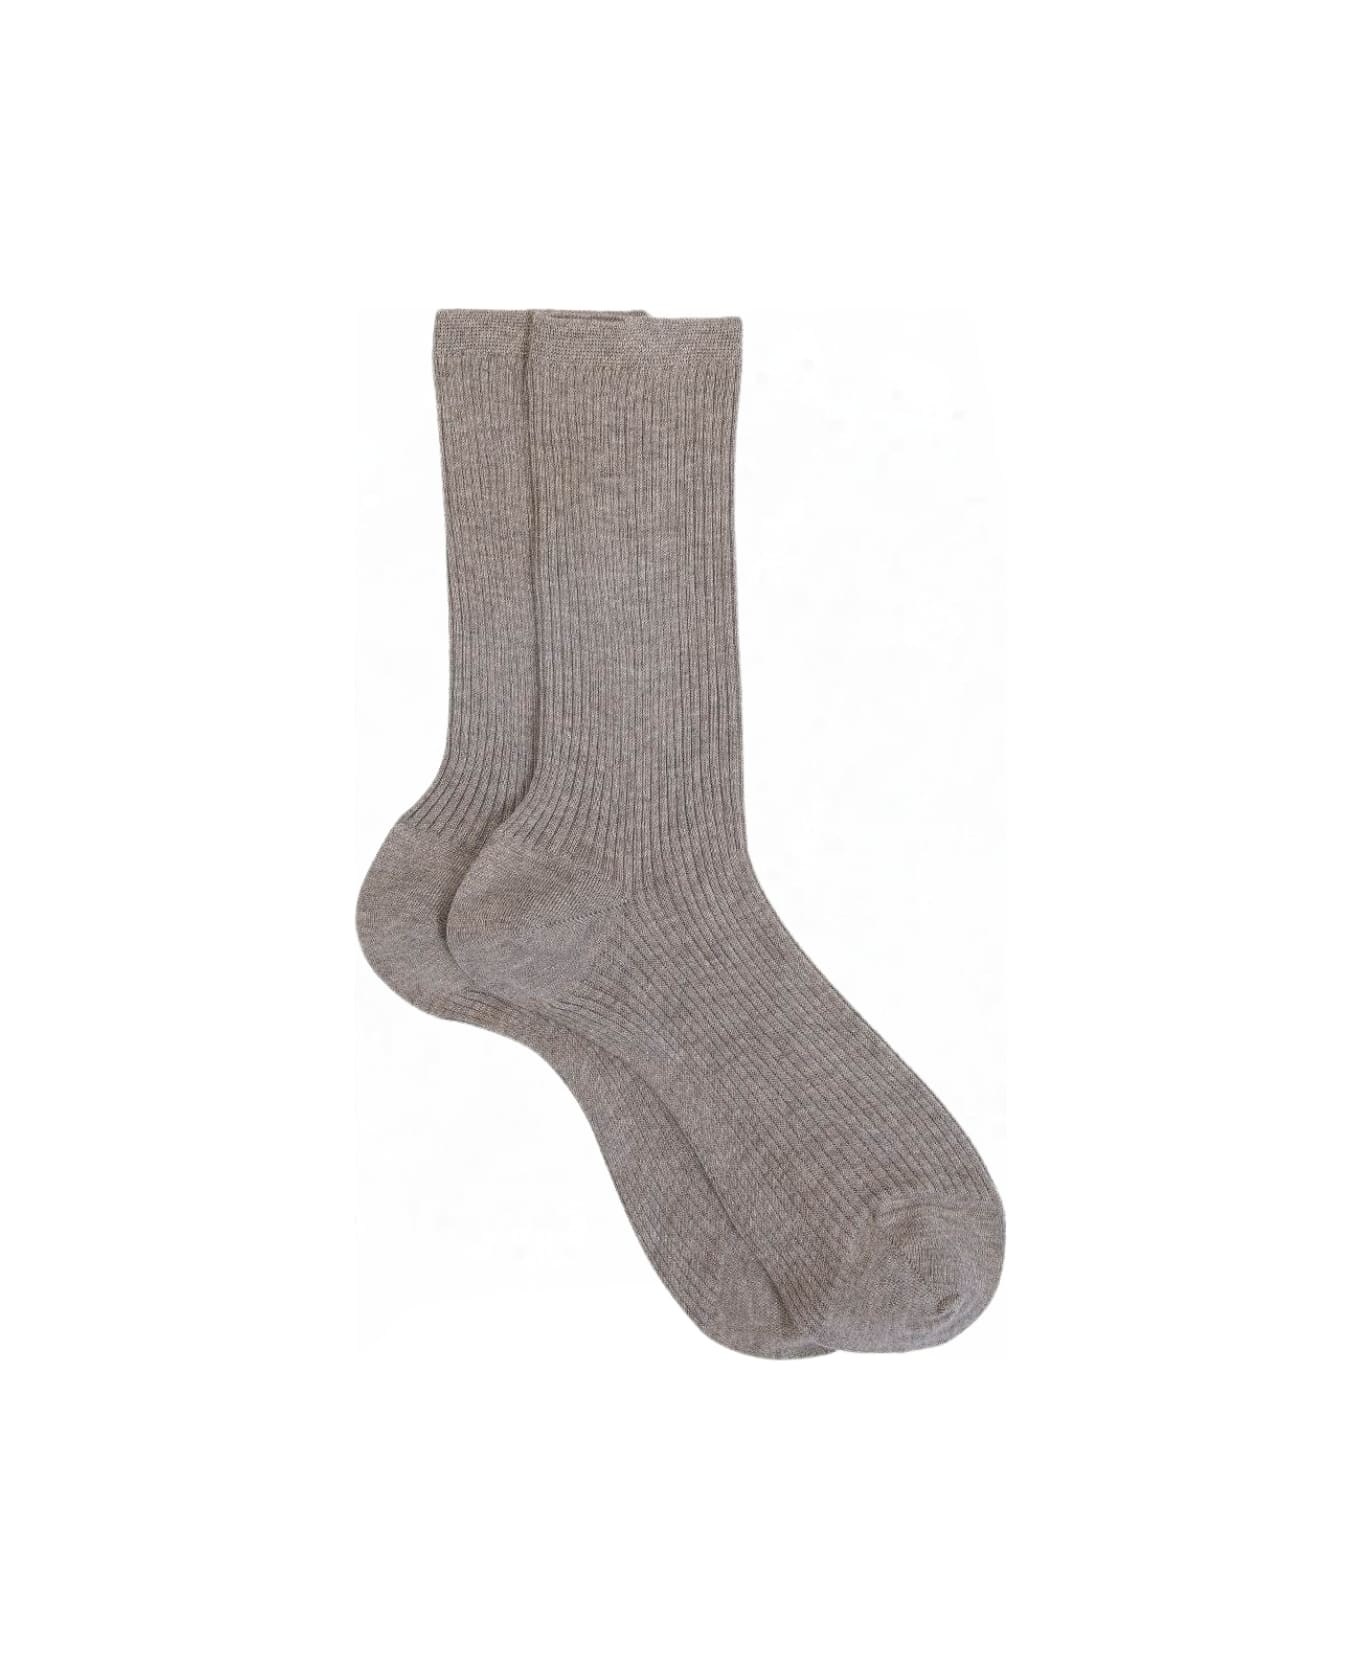 Maria La Rosa Wd013un4008 Socks - Light Grey